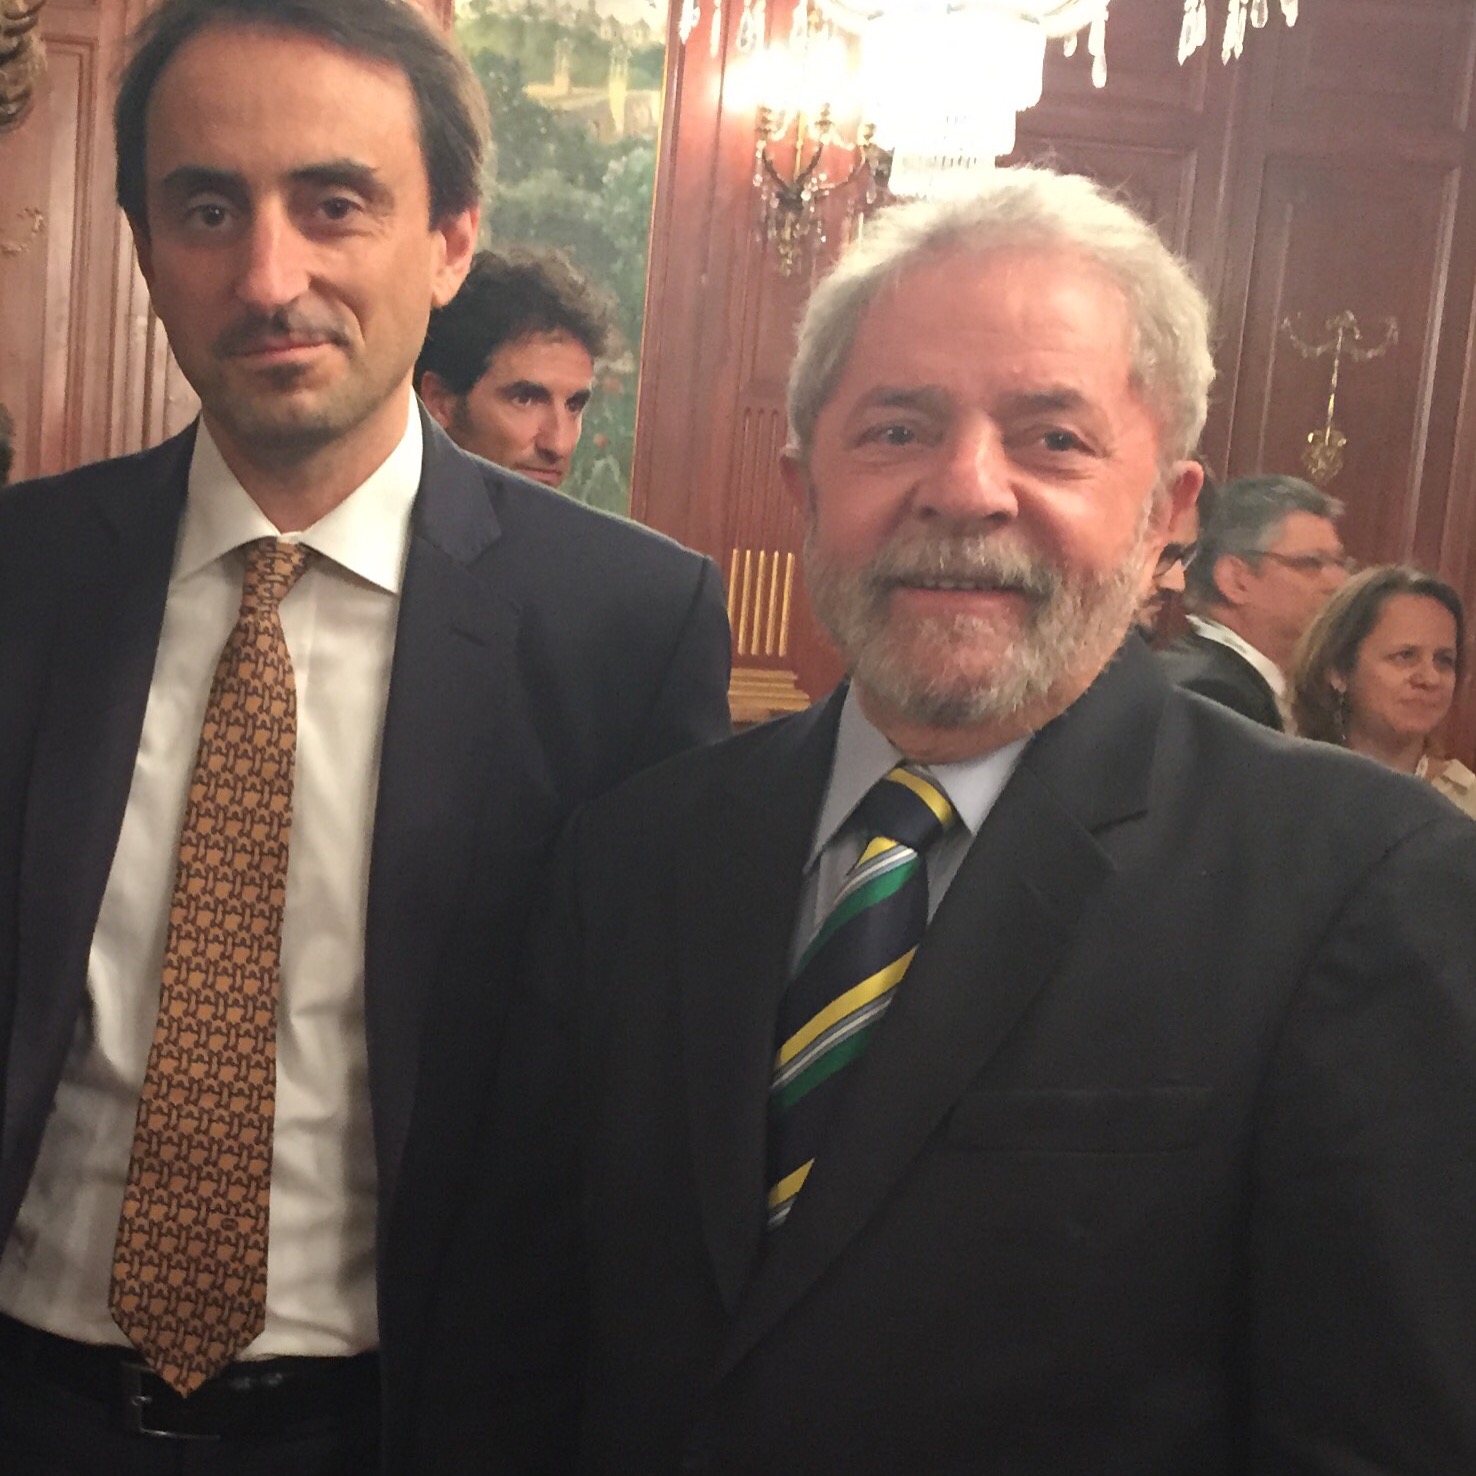 Nicolas De Santis meets President Lula of Brazil